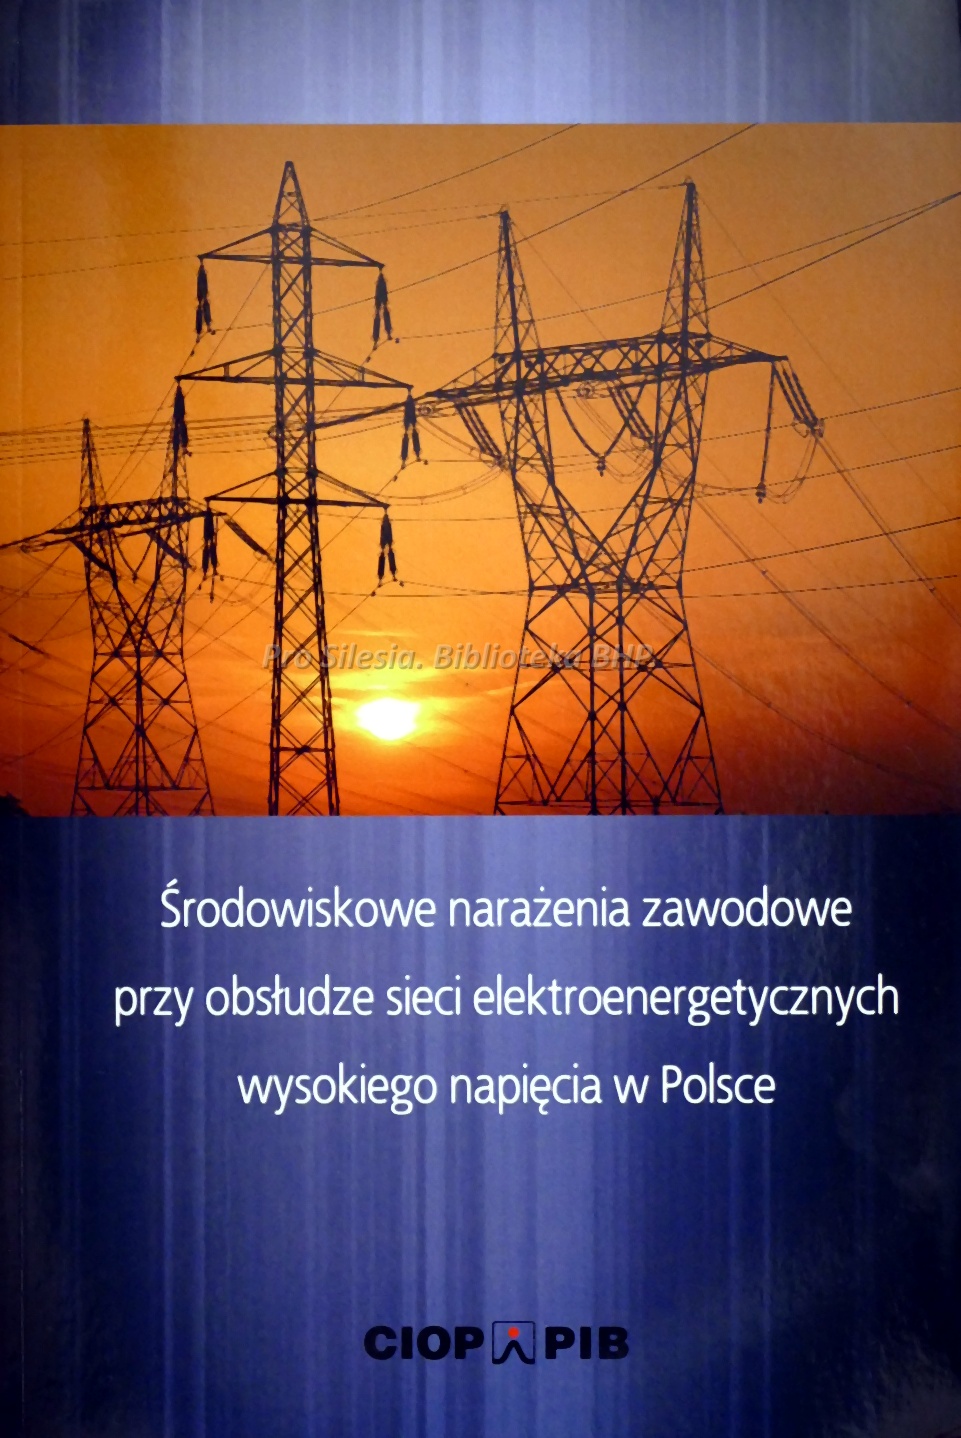 Środowiskowe narażenia zawodowe przy obsłudze sieci elektroenergetycznych wysokiego napięcia w Polsce, wyd. CIOP-PIB